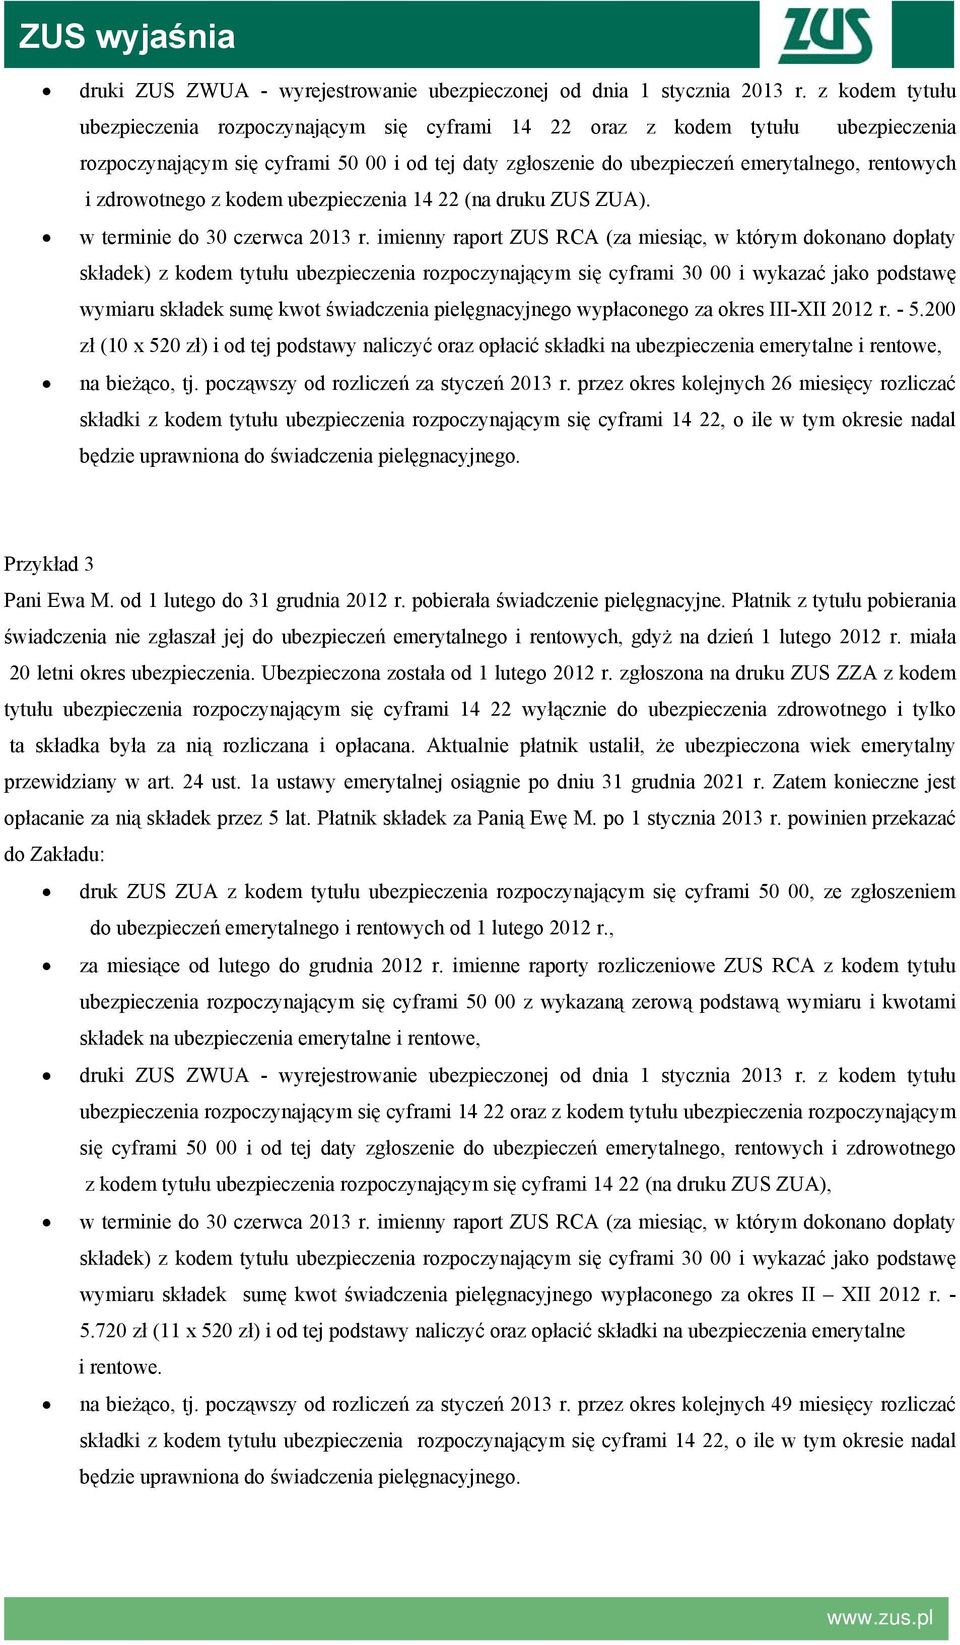 zdrowotnego z kodem ubezpieczenia 14 22 (na druku ZUS ZUA). w terminie do 30 czerwca 2013 r.